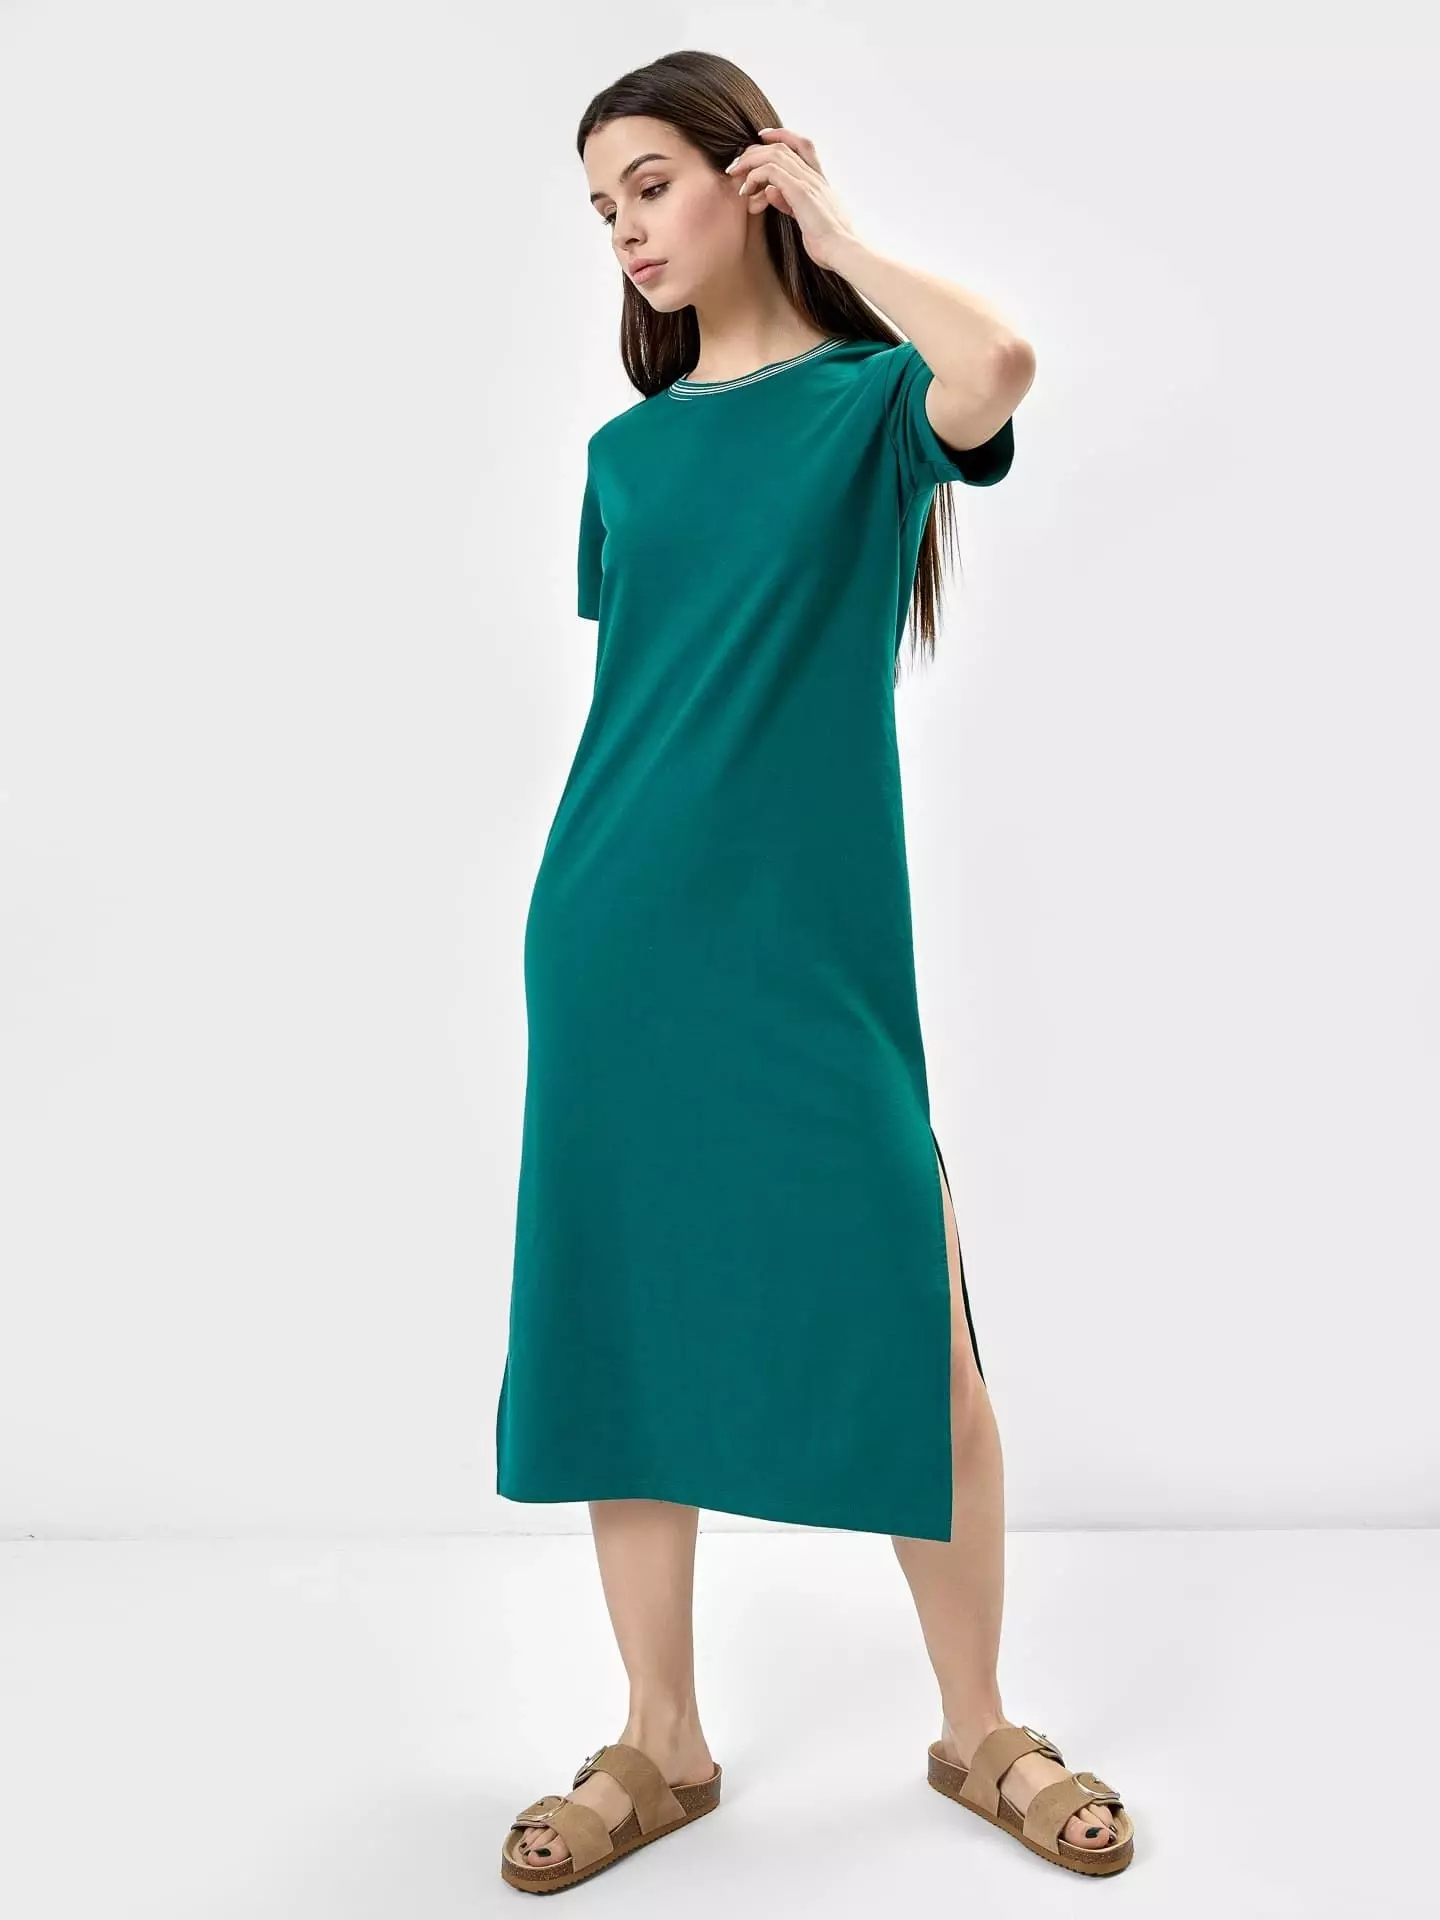 Платье жеское, арт. 22/22299Ц-7, модель 152402, р-р 164/170-92-98, цвет: т.зеленый